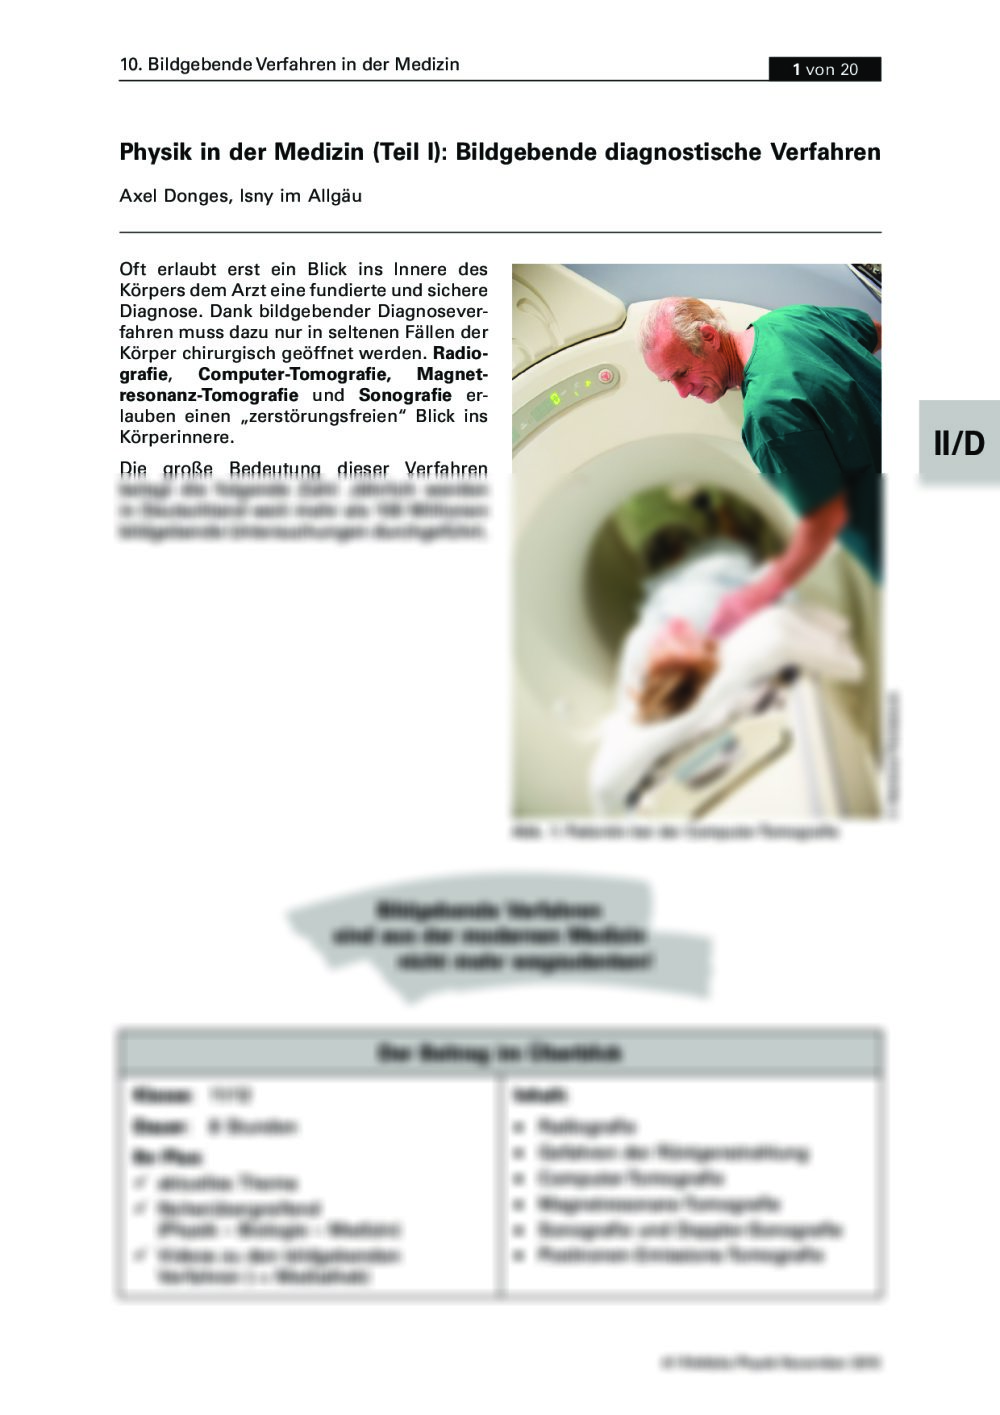 Bildgebende diagnostische Verfahren - Seite 1